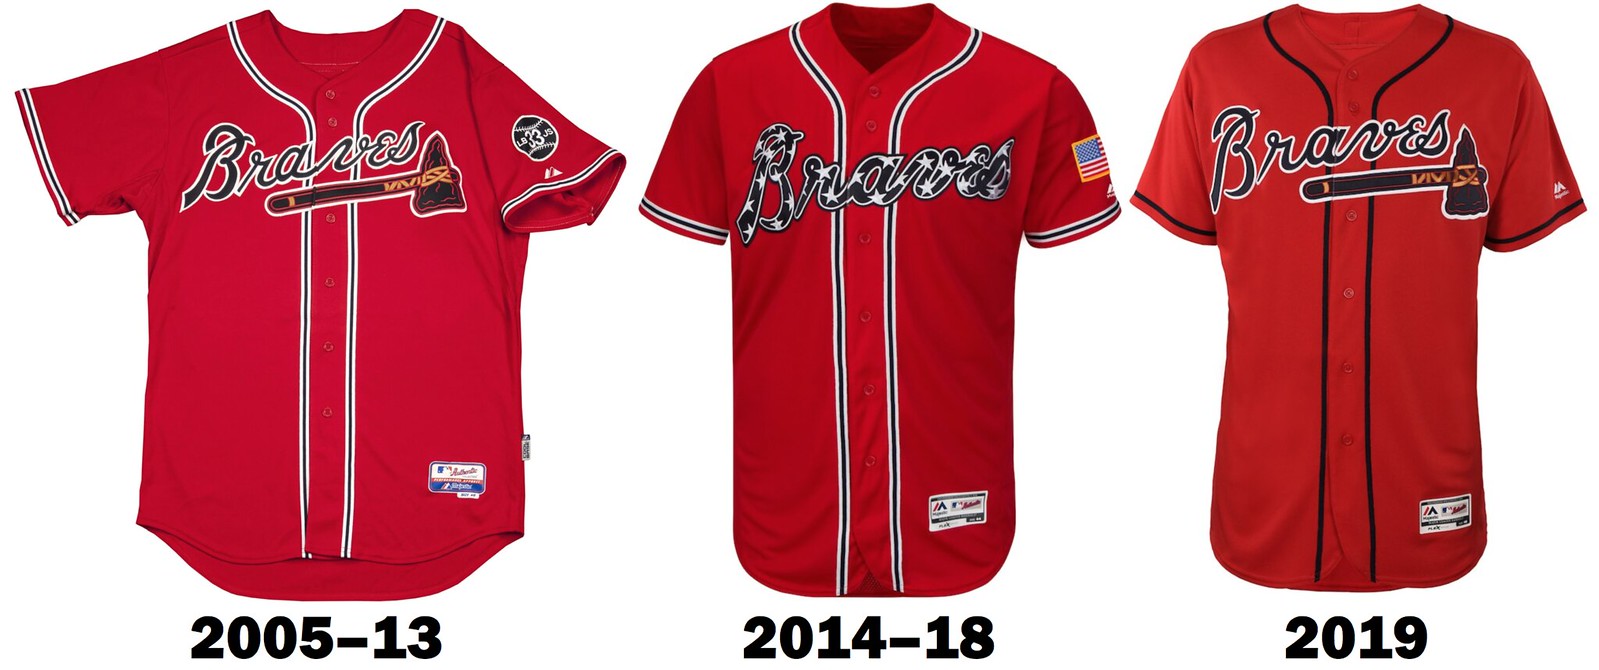 Braves Unveil Uniform Changes for 2019 